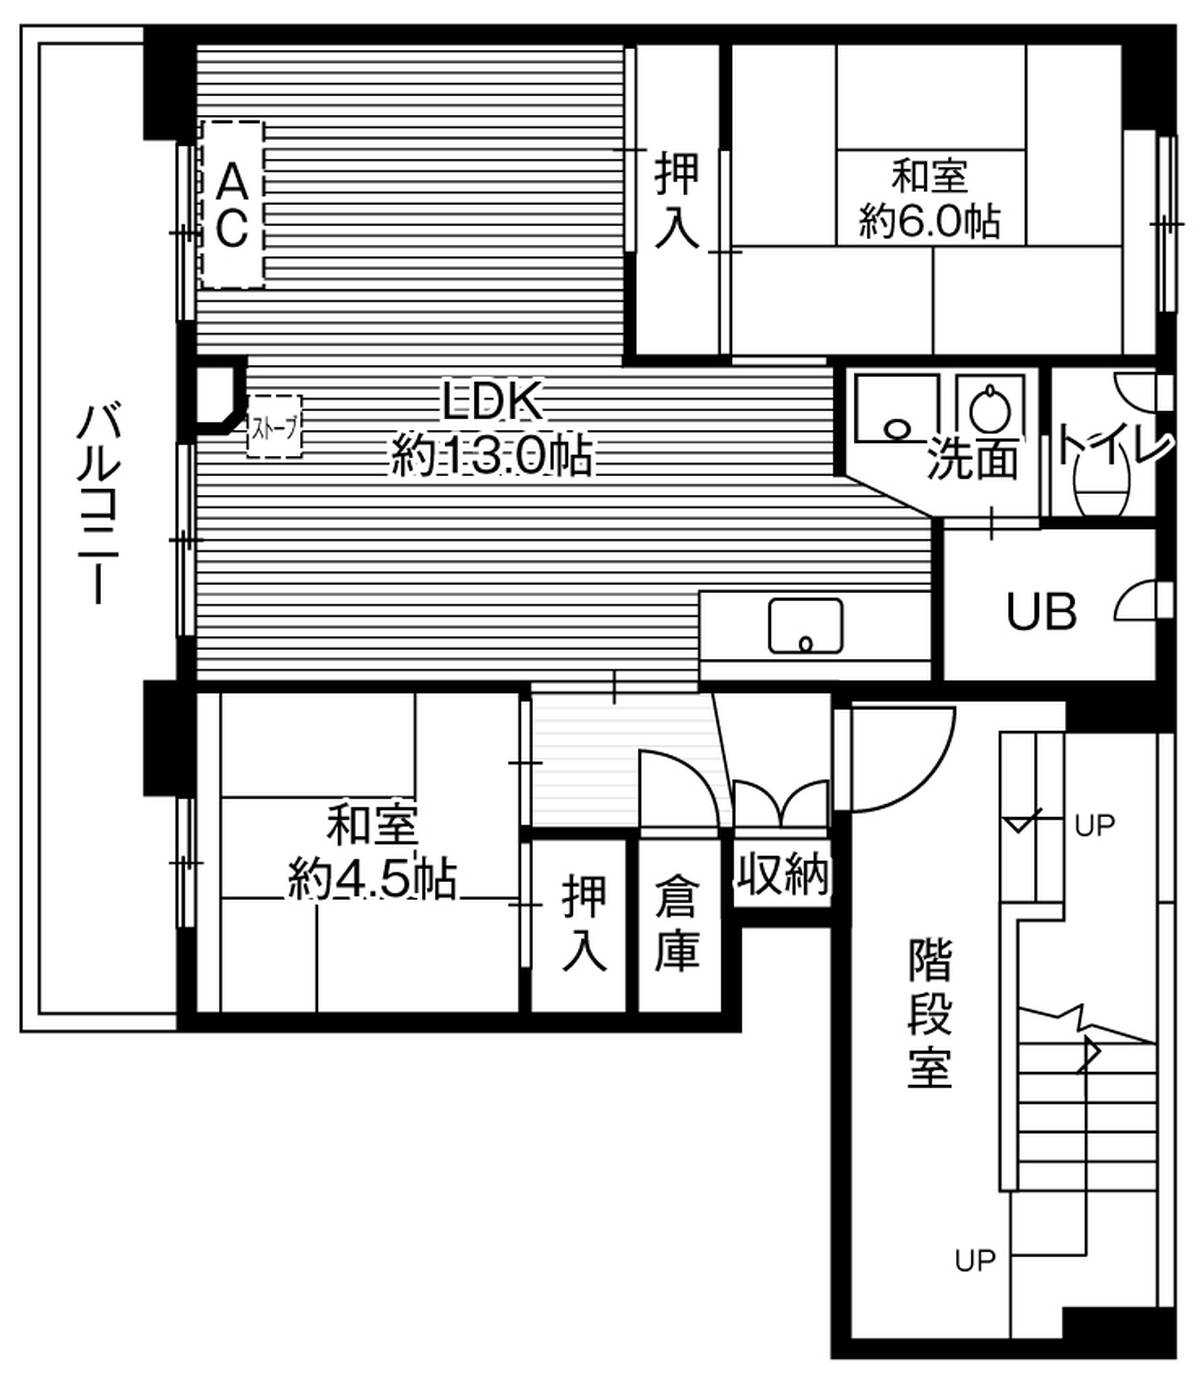 3DK floorplan of Village House Megumino in Eniwa-shi